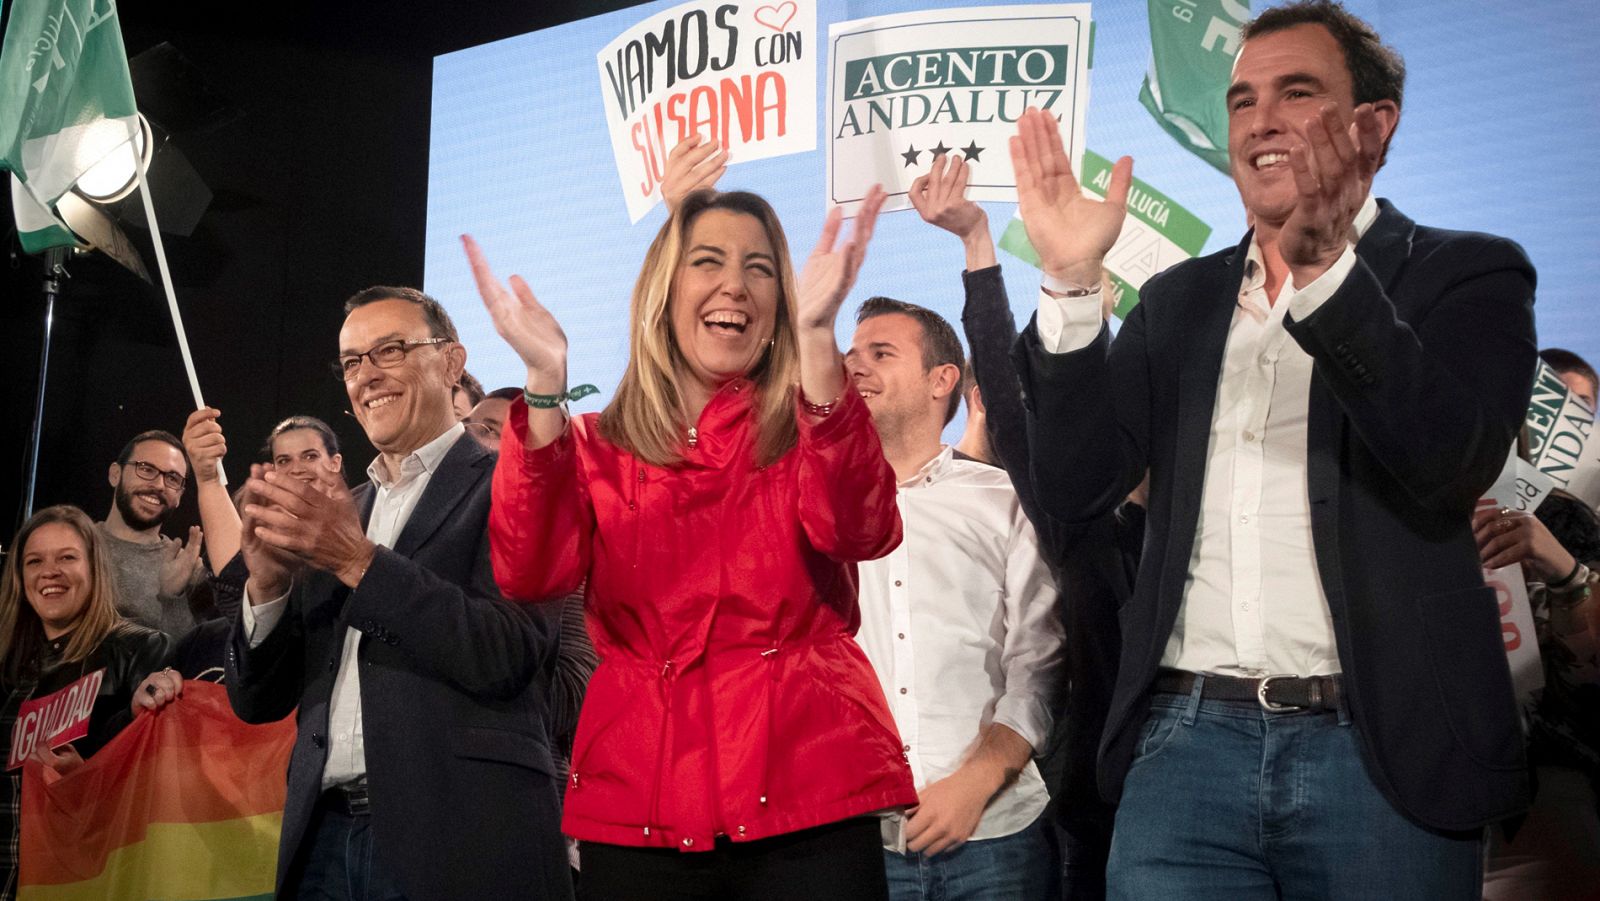 Telediario 1: Los candidatos retoman la campaña tras el debate a cuatro con promesas y críticas a otros partidos | RTVE Play